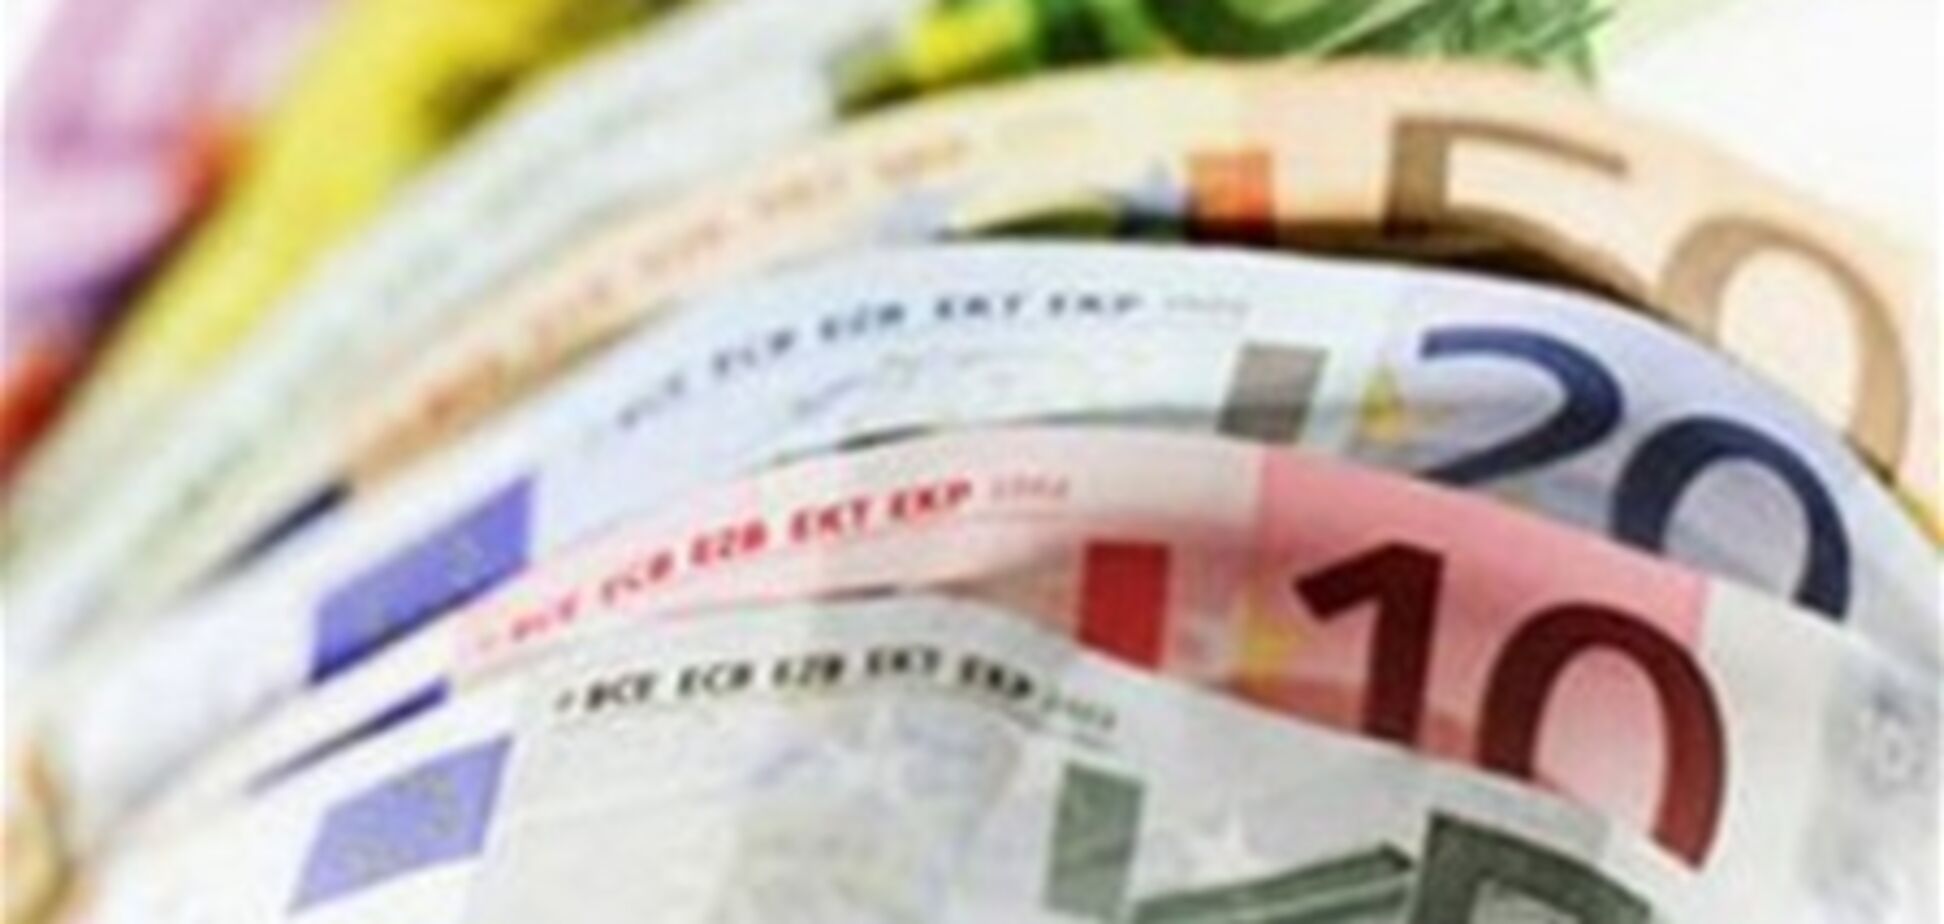 Если евро умрет, спрос на частично конвертируемые валюты вырастет - эксперт